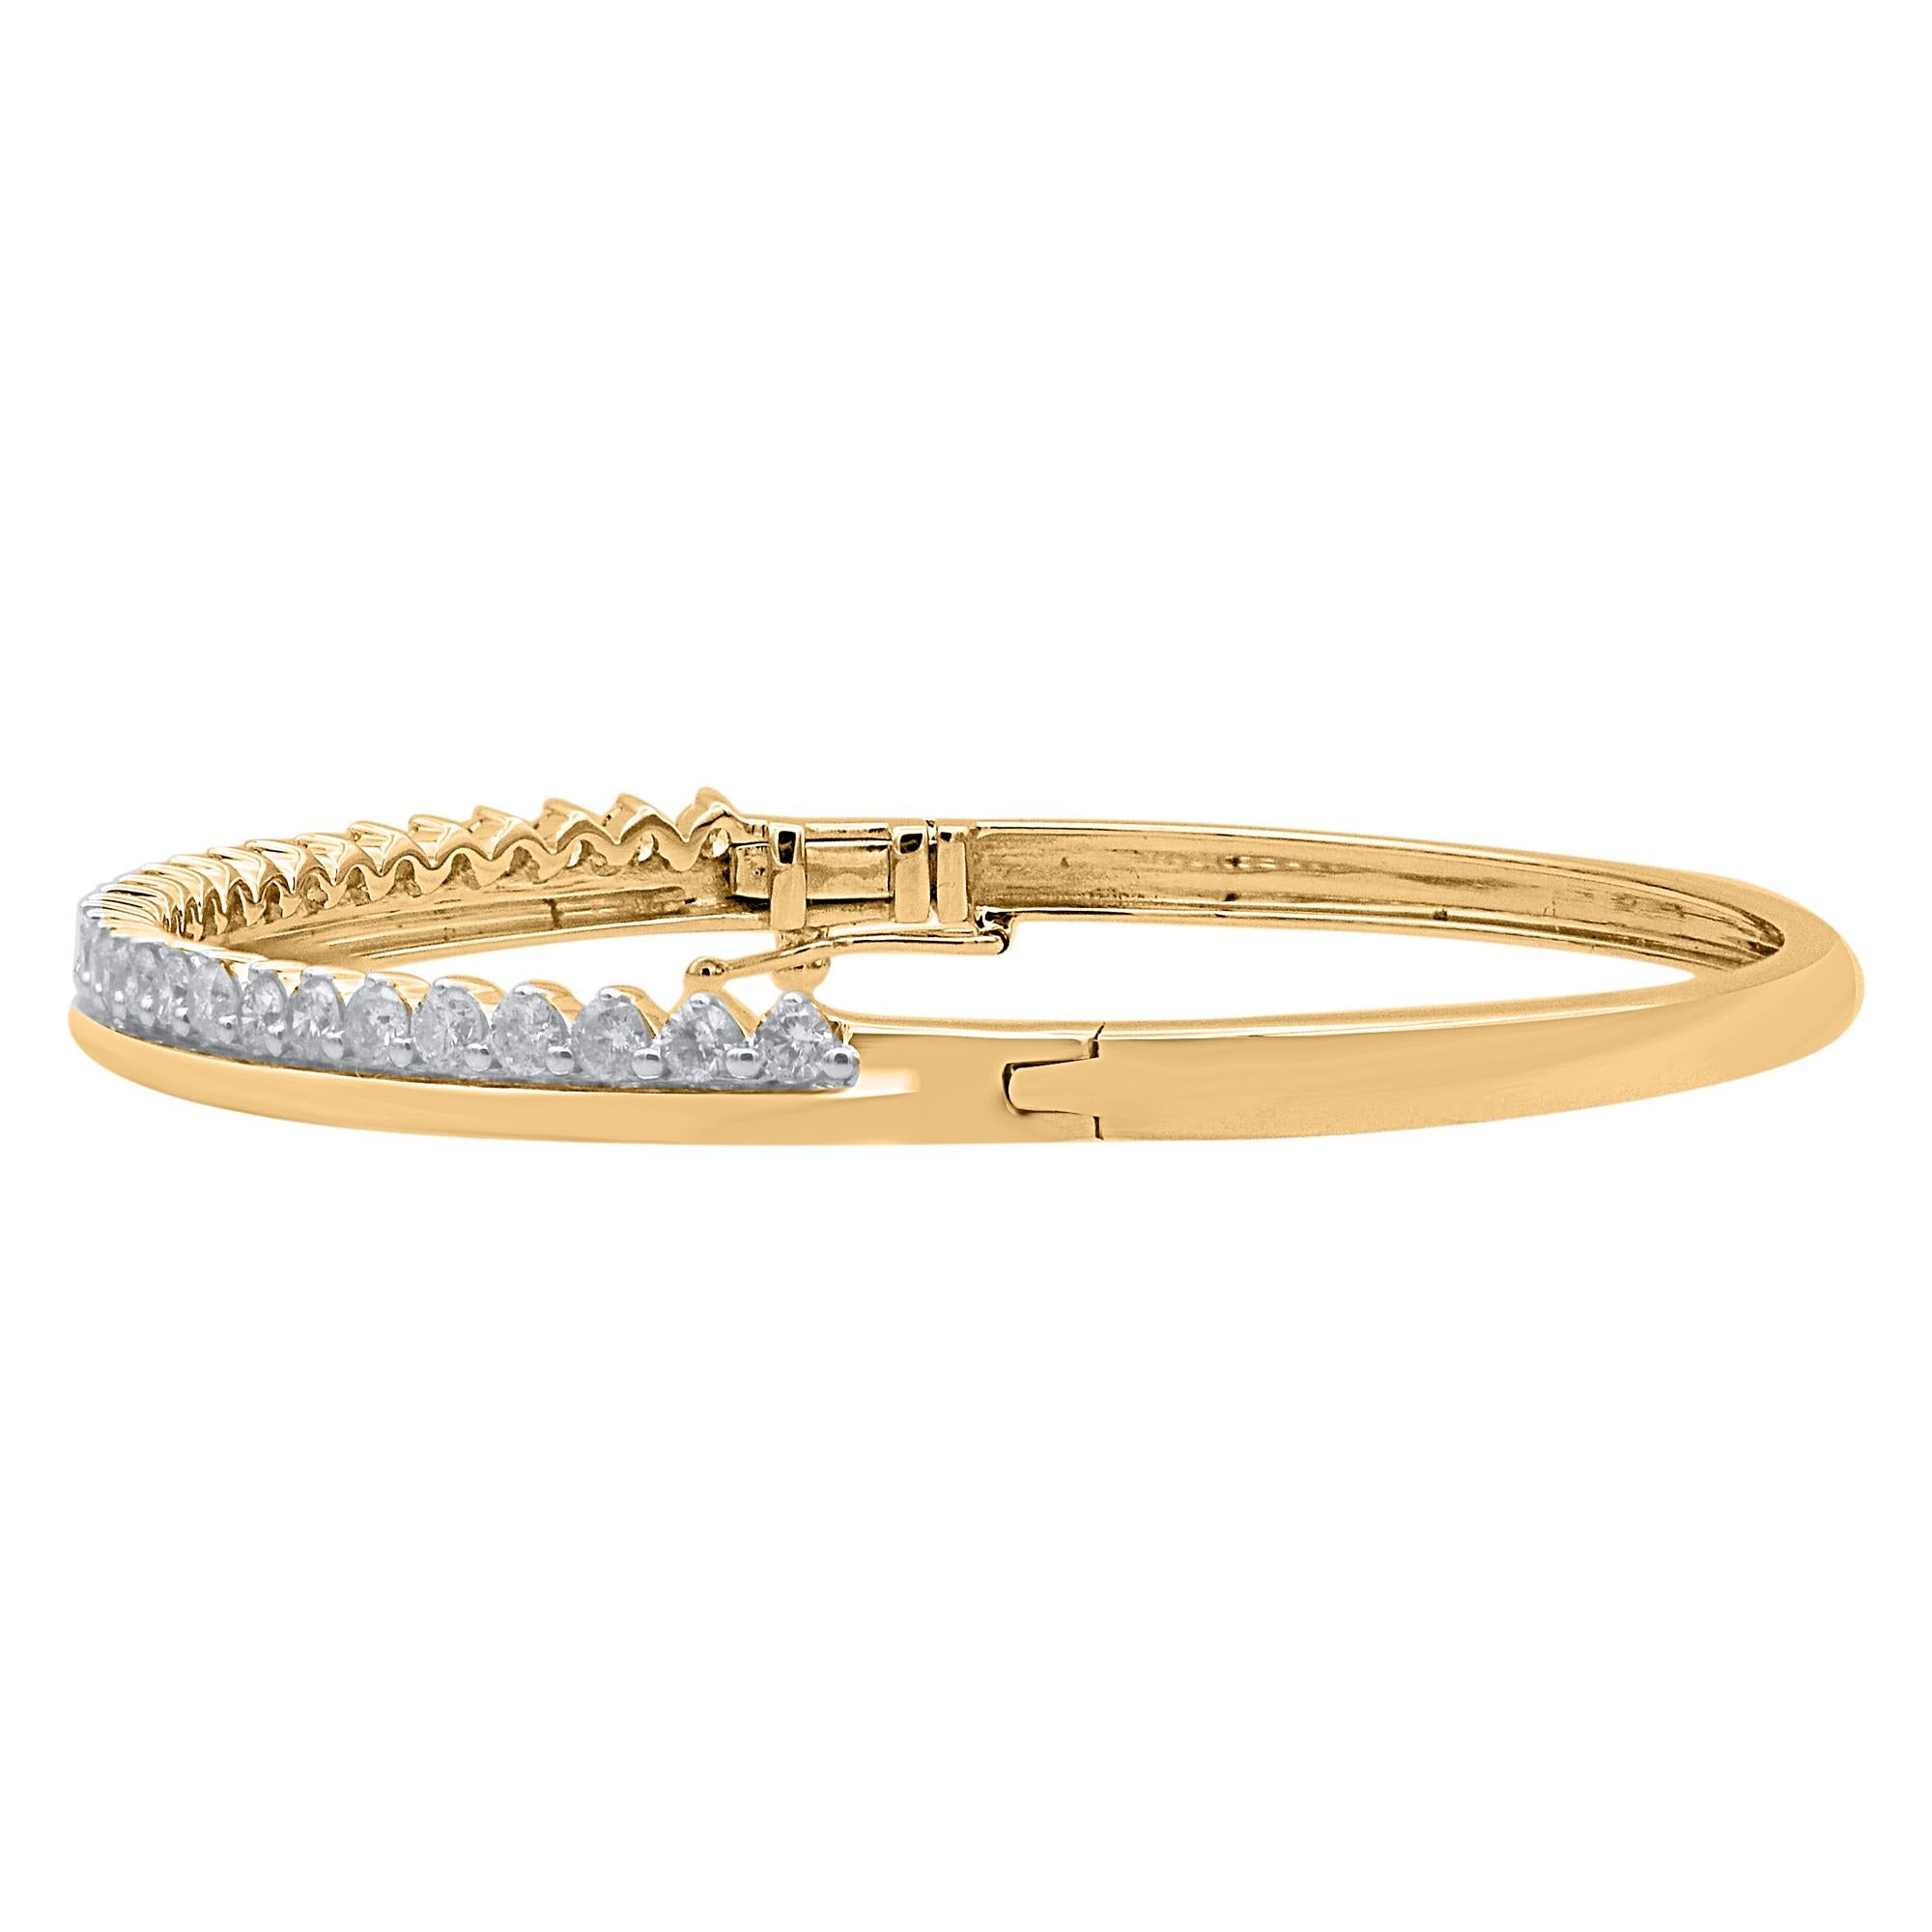 Classique et sophistiqué, ce bracelet en diamants s'accorde avec toutes les tenues vestimentaires.
Ce bracelet Brilliante présente 29 diamants naturels de taille brillante en serti clos et façonnés en or jaune 14 kt. Les diamants sont de couleur H-I